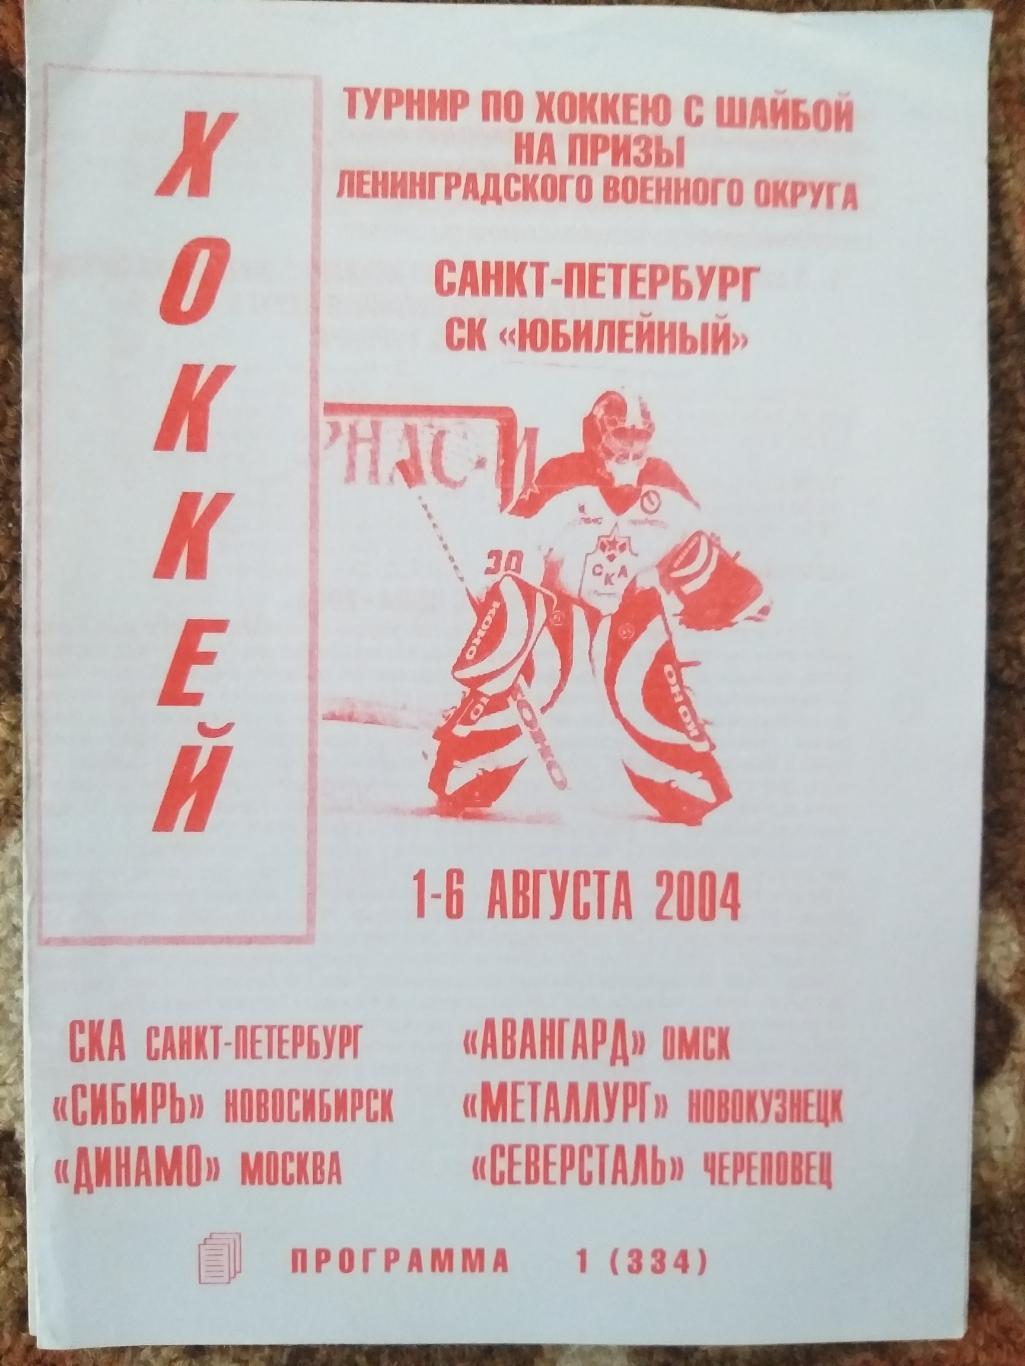 Турнир ЛенВО 1-6.08.2004 СКА,Северсталь,Сибирь,Динамо (Москва) второй вид.